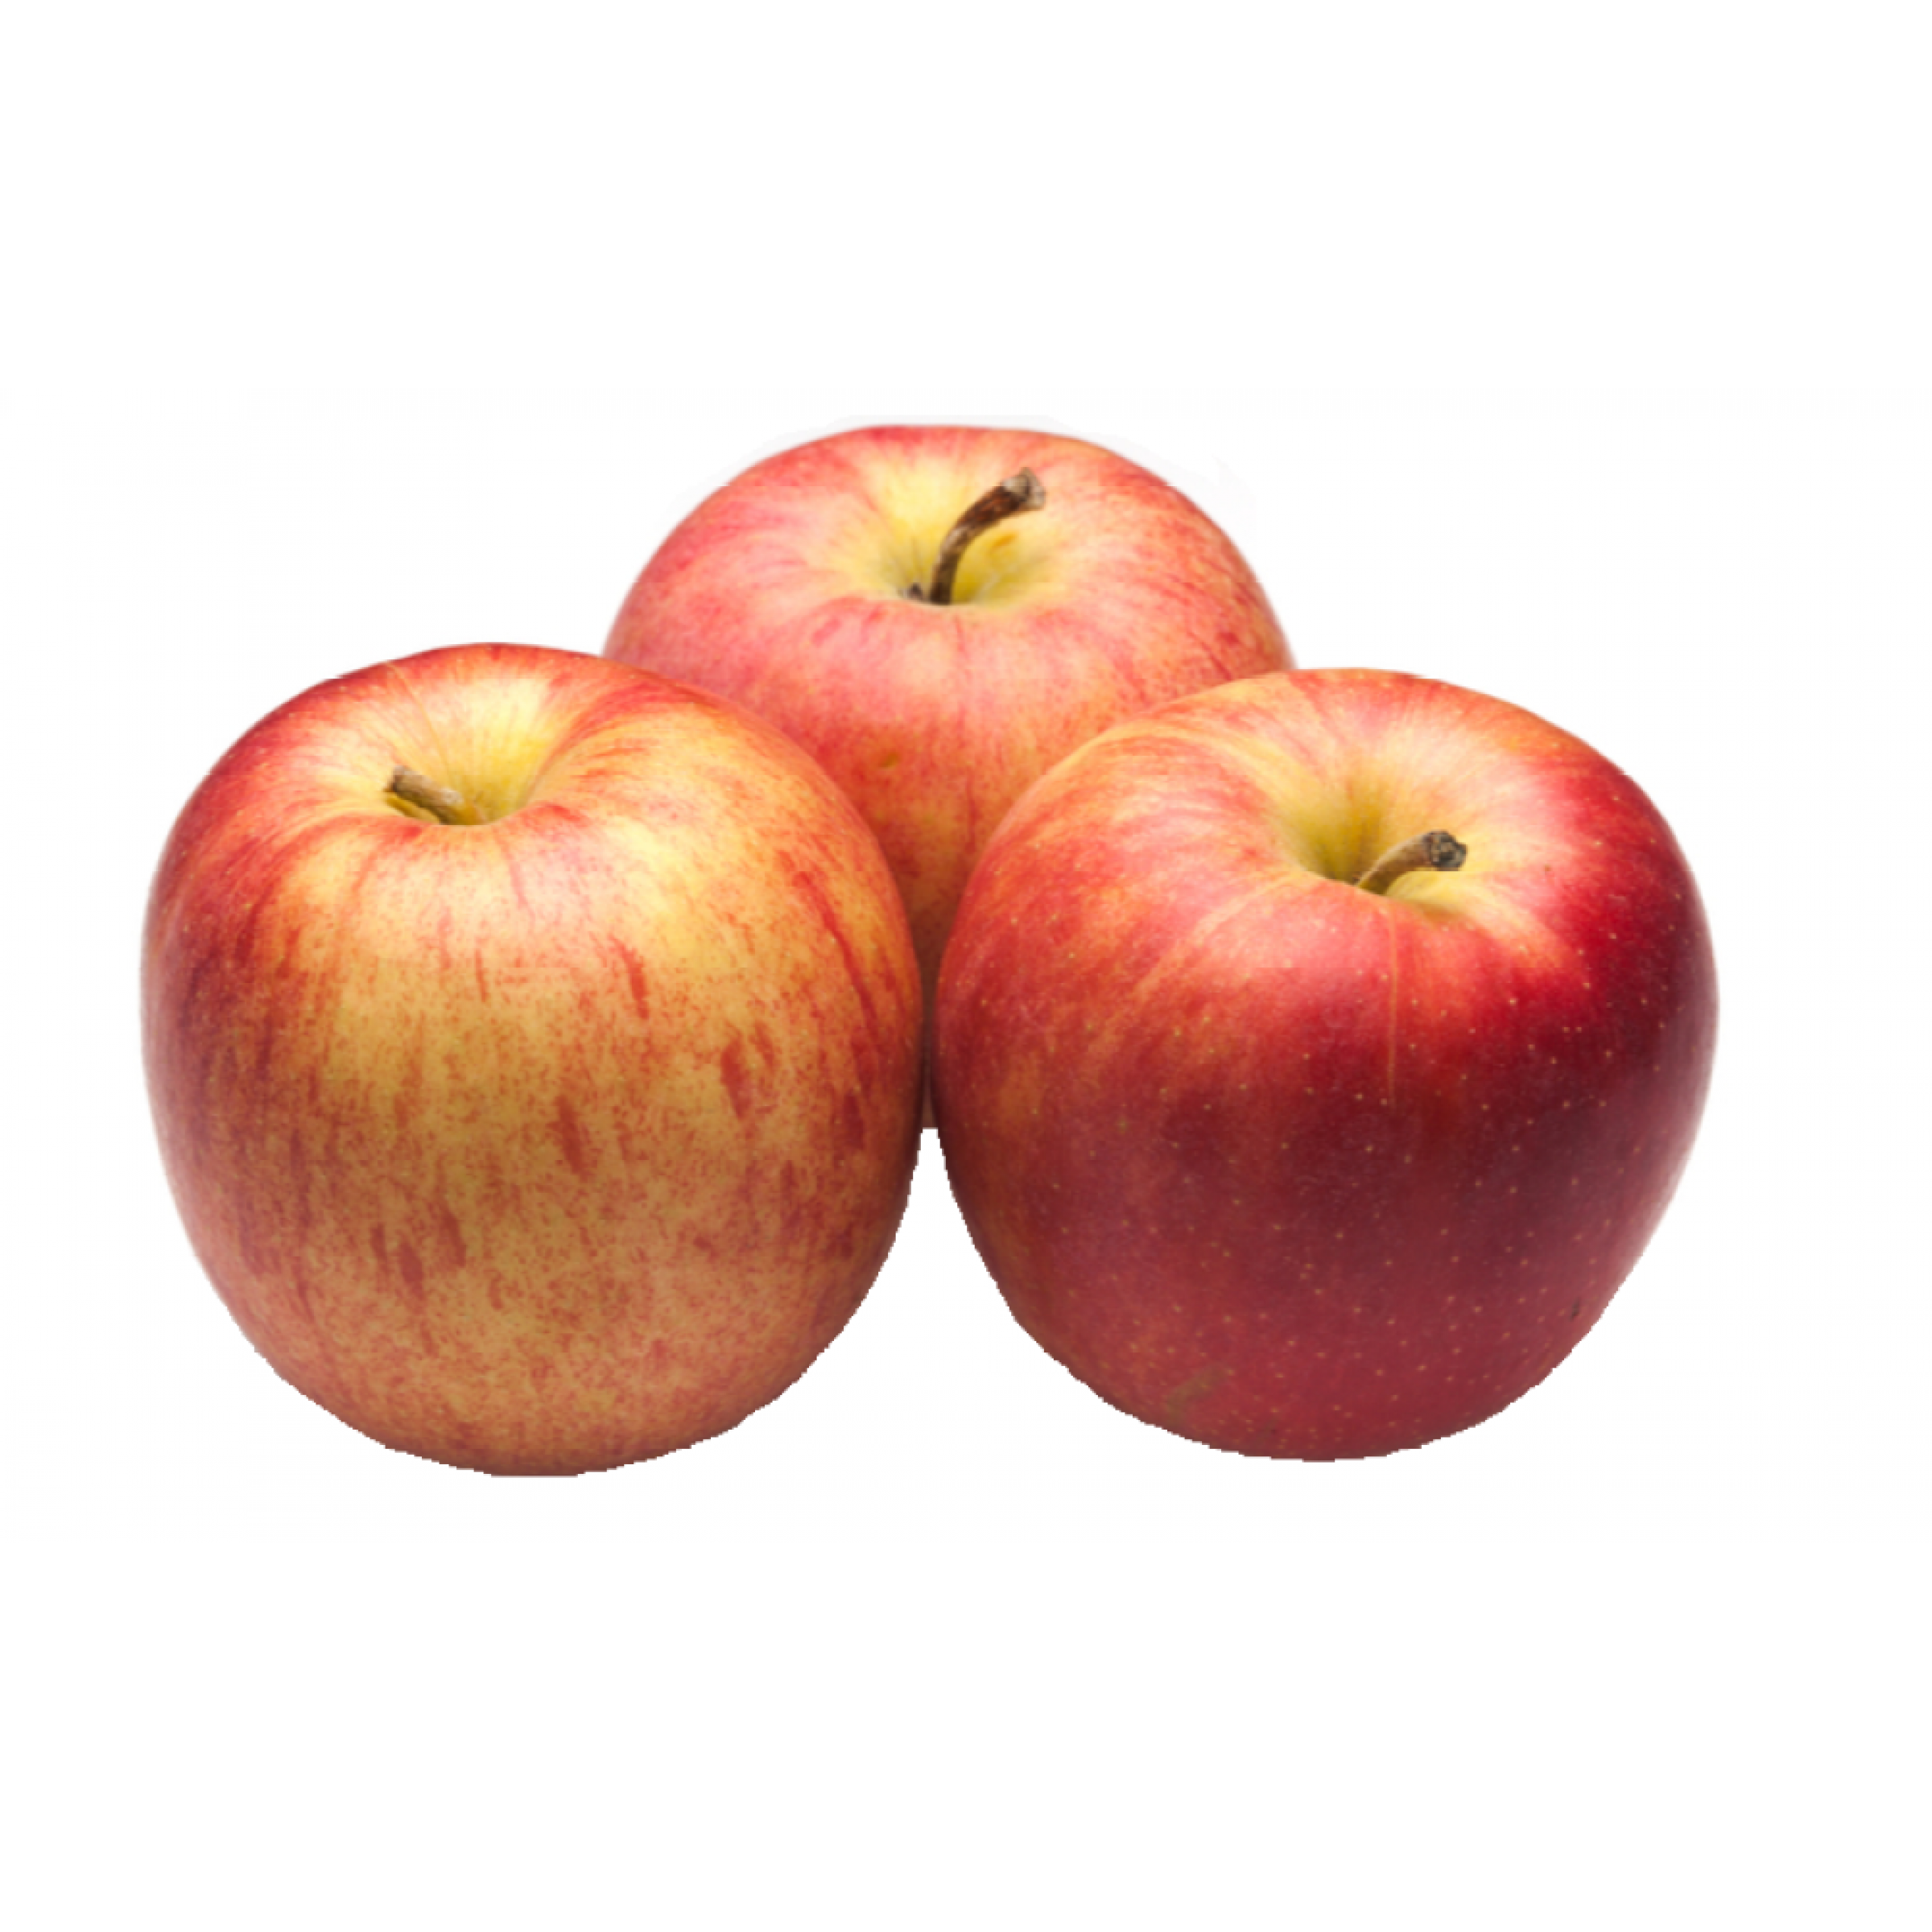 Красно-желтые яблоки Фуджи весовые (средний вес: 1200 г)